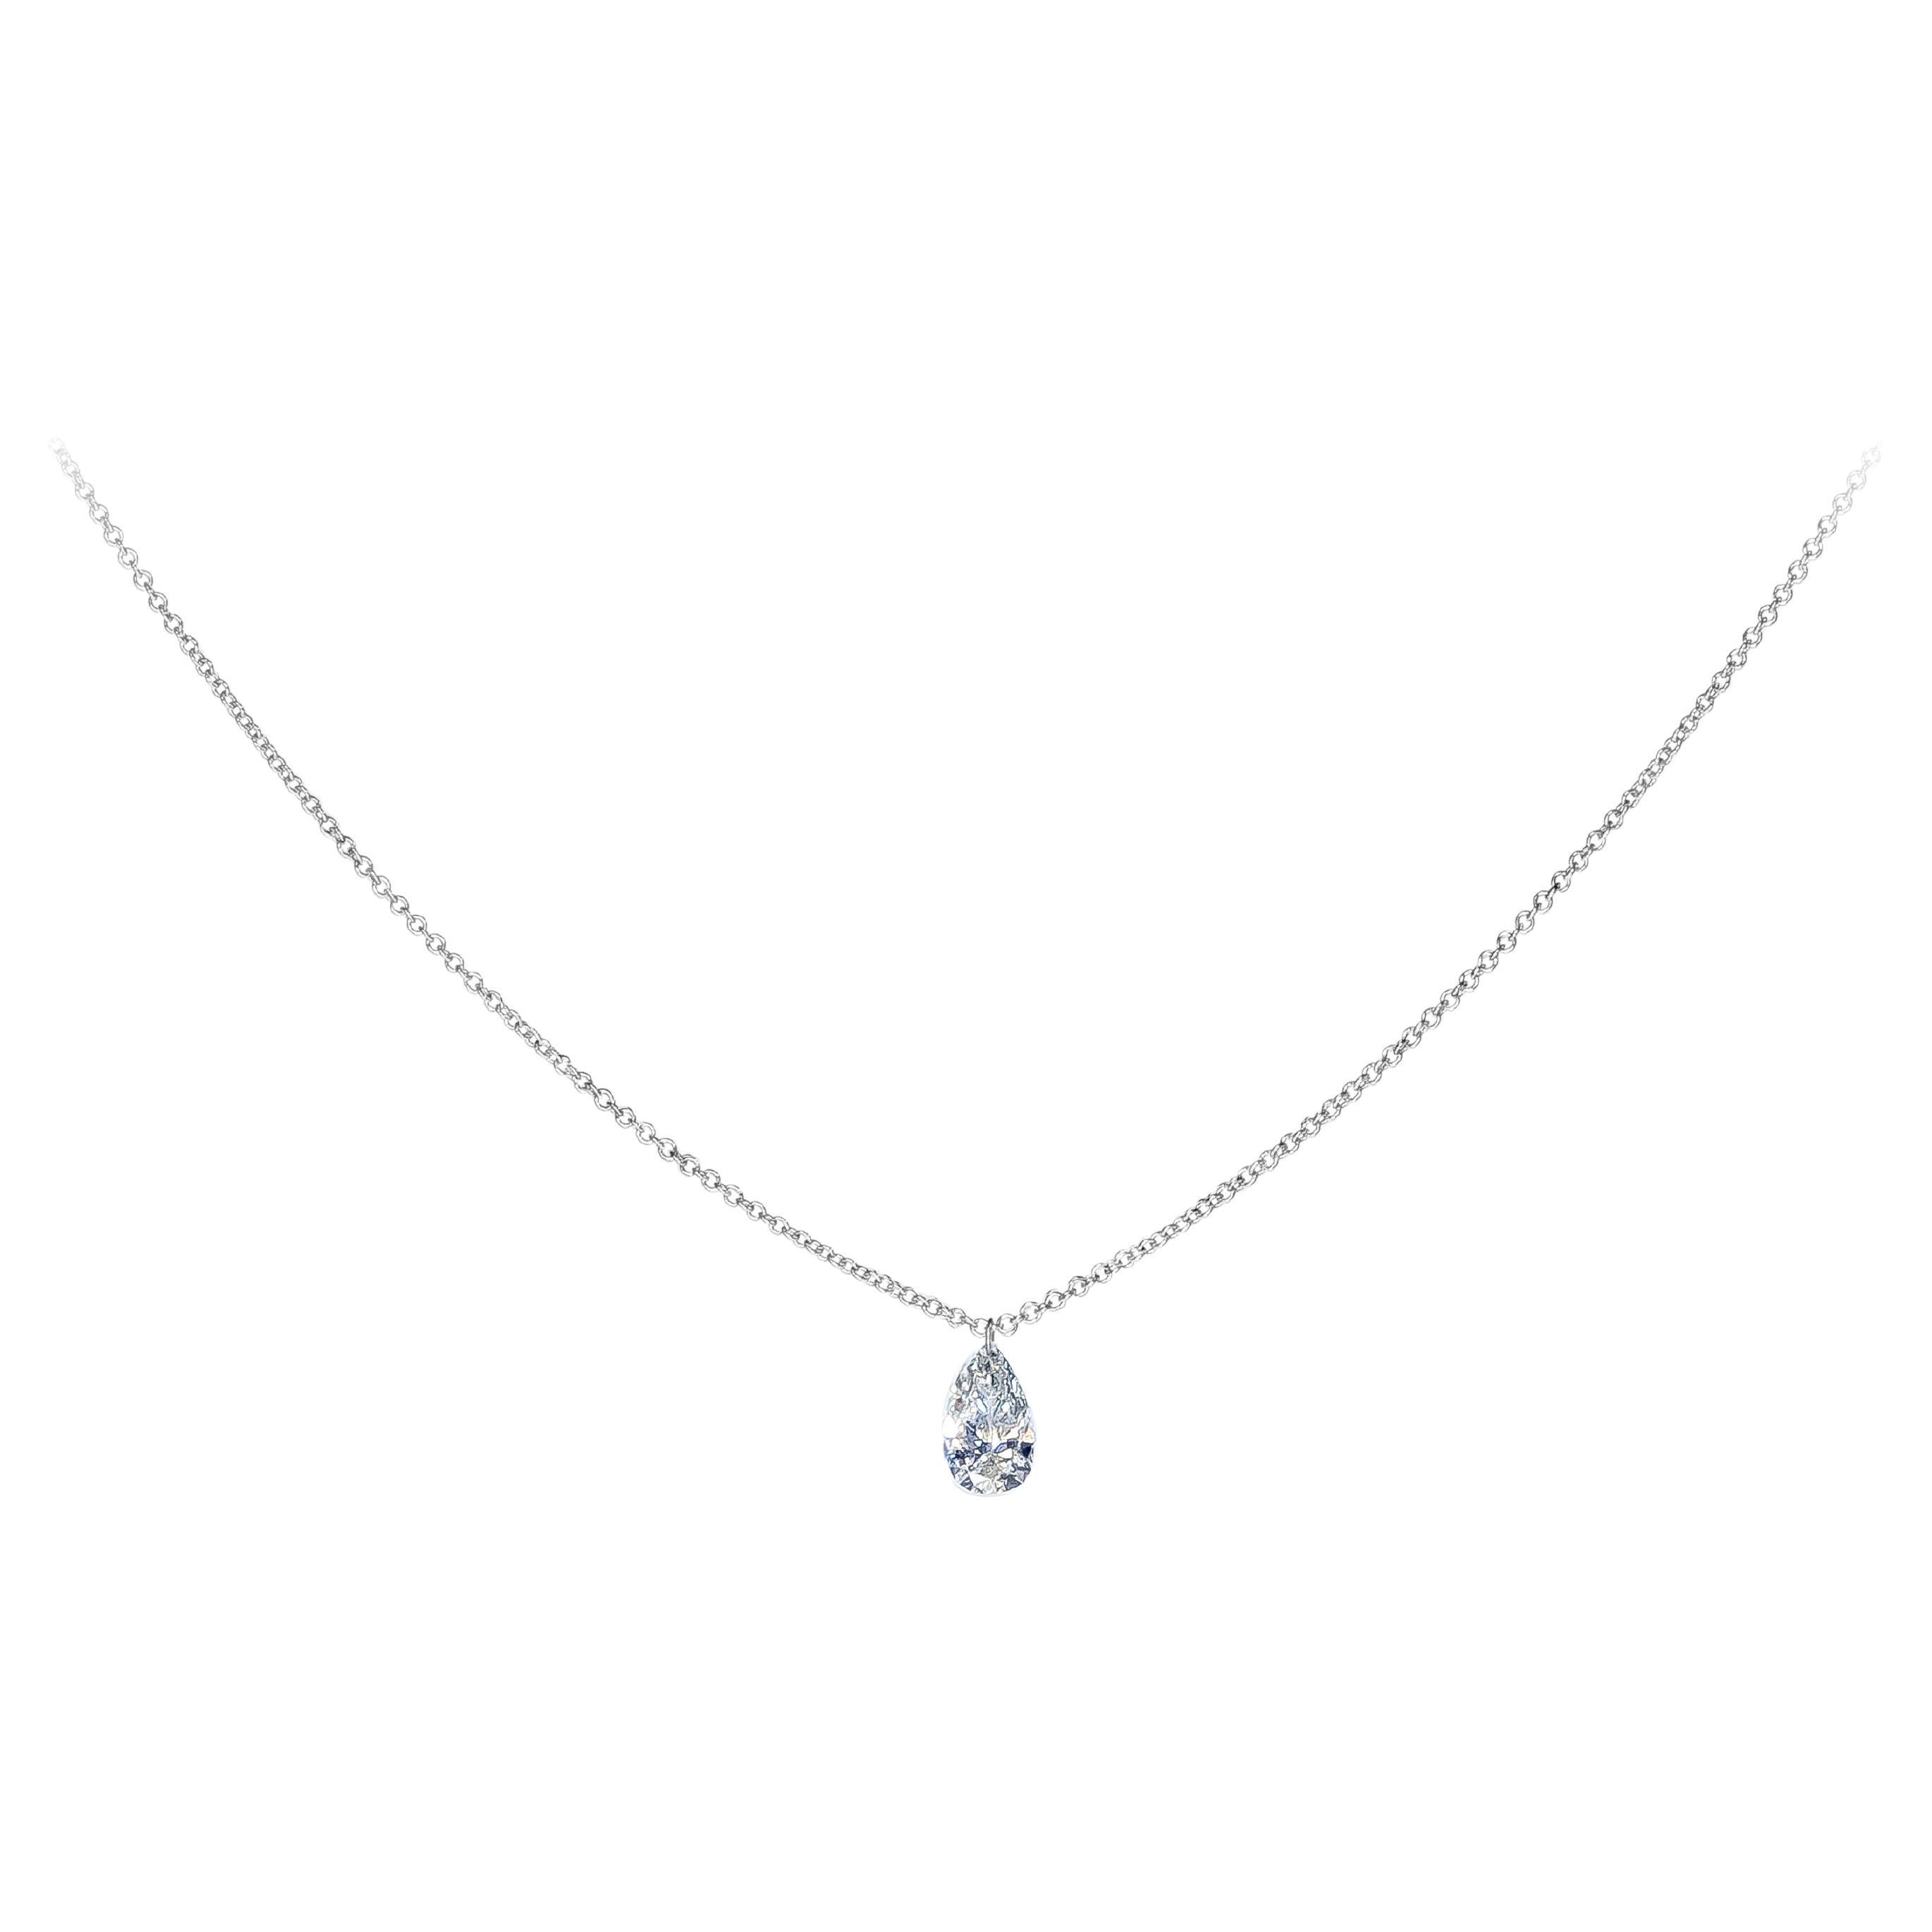 Collier pendentif solitaire en forme de poire avec diamants de 0,67 carat au total